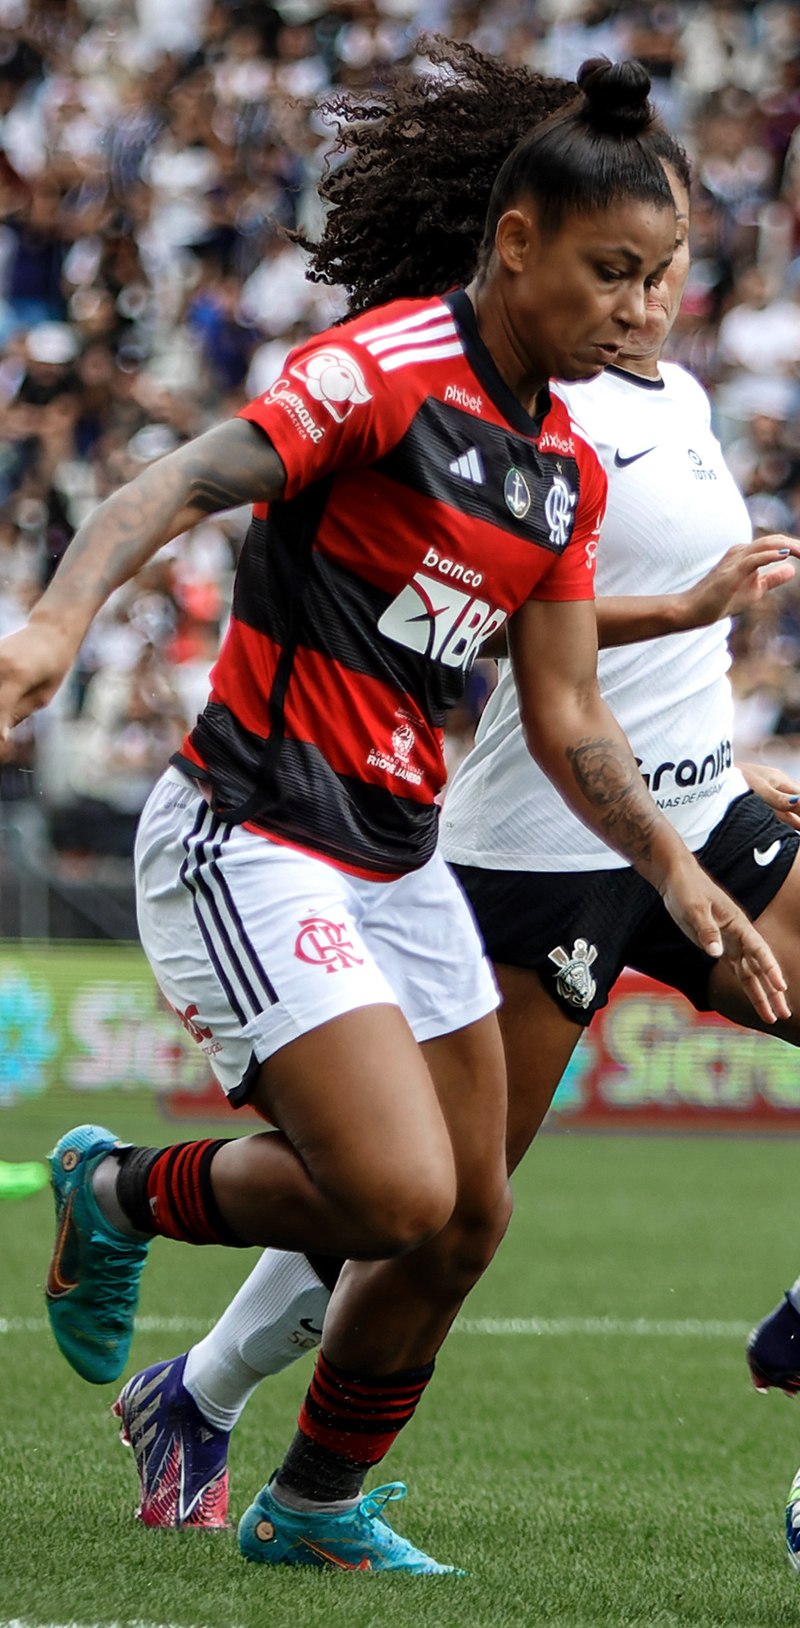 Maria Alves troca o Santos pela Juventus, onde será a primeira jogadora  brasileira, futebol feminino